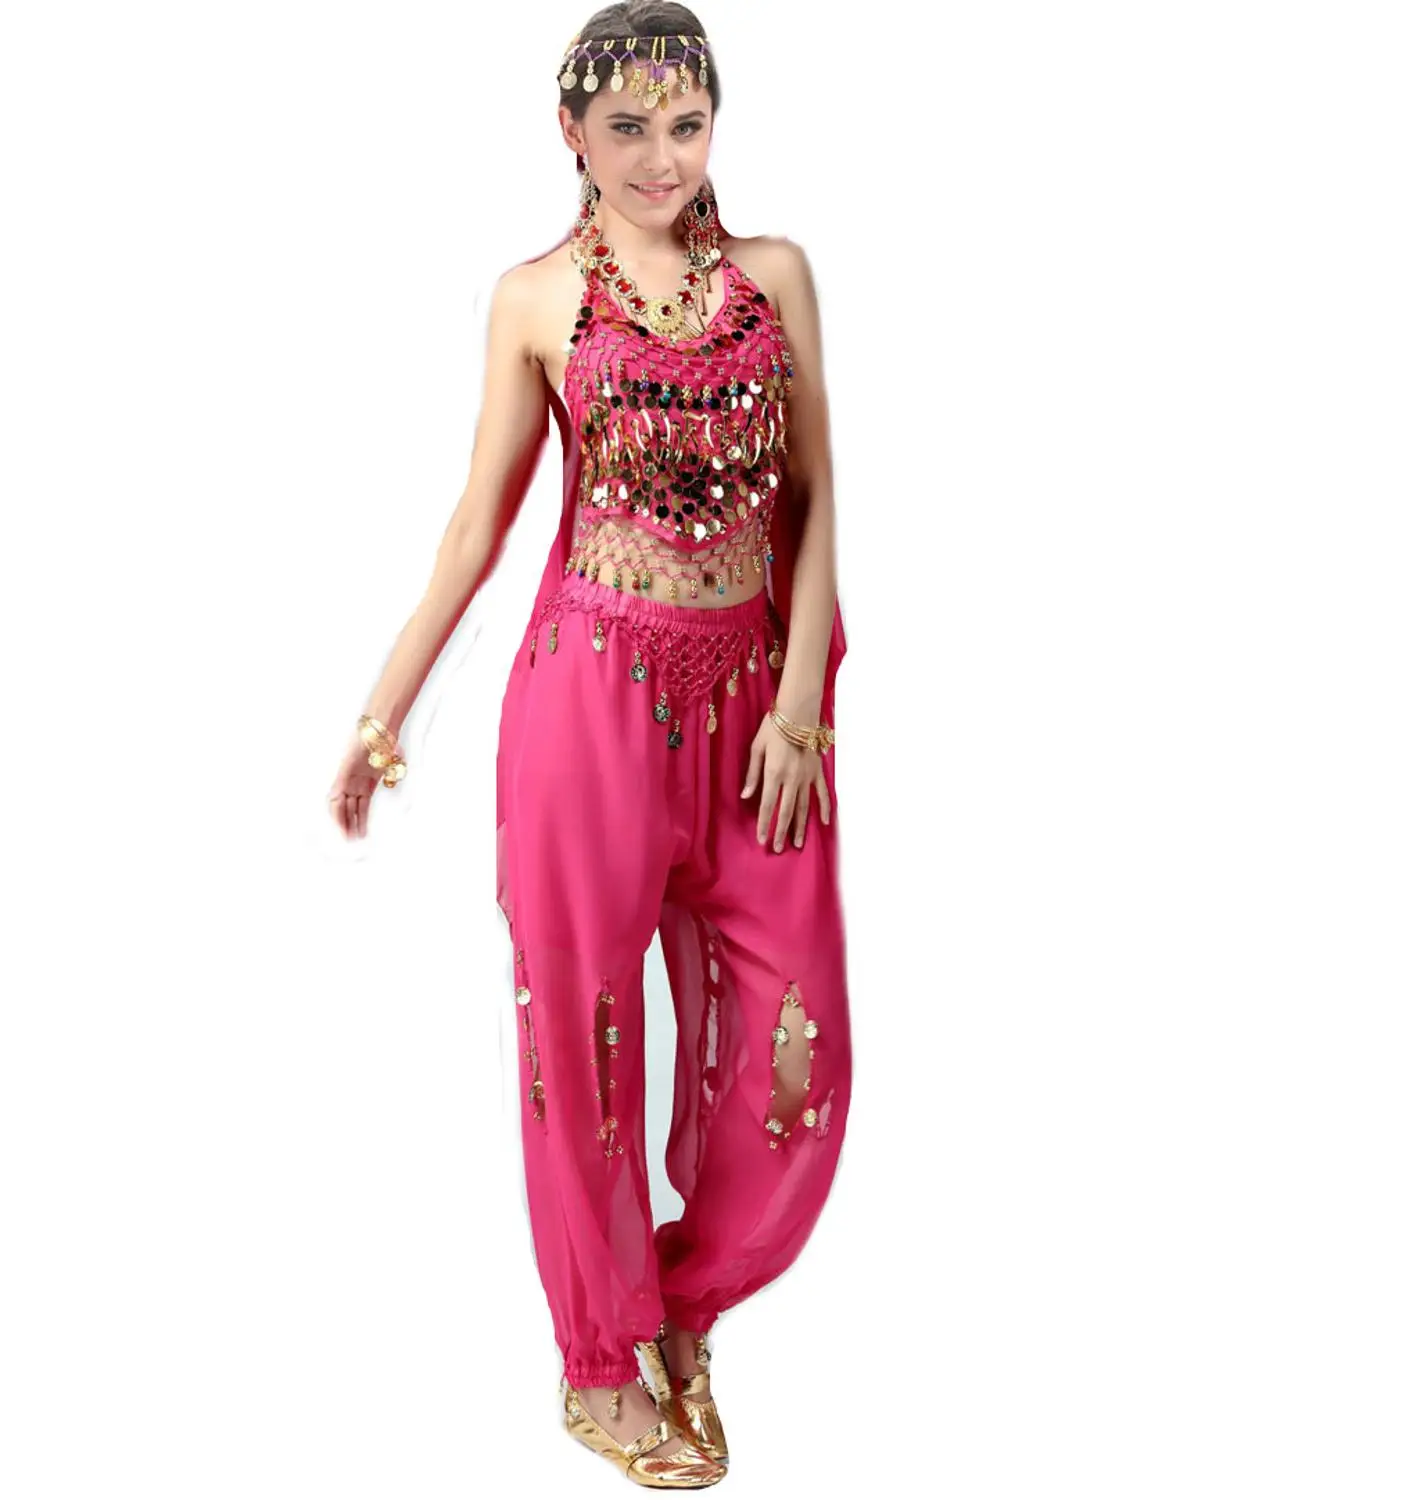 2 шт набор монета Египетский танец живота костюм индийский триба брюки Цыганский костюм танца живота платье женский танец живота костюм набор - Цвет: Розовый